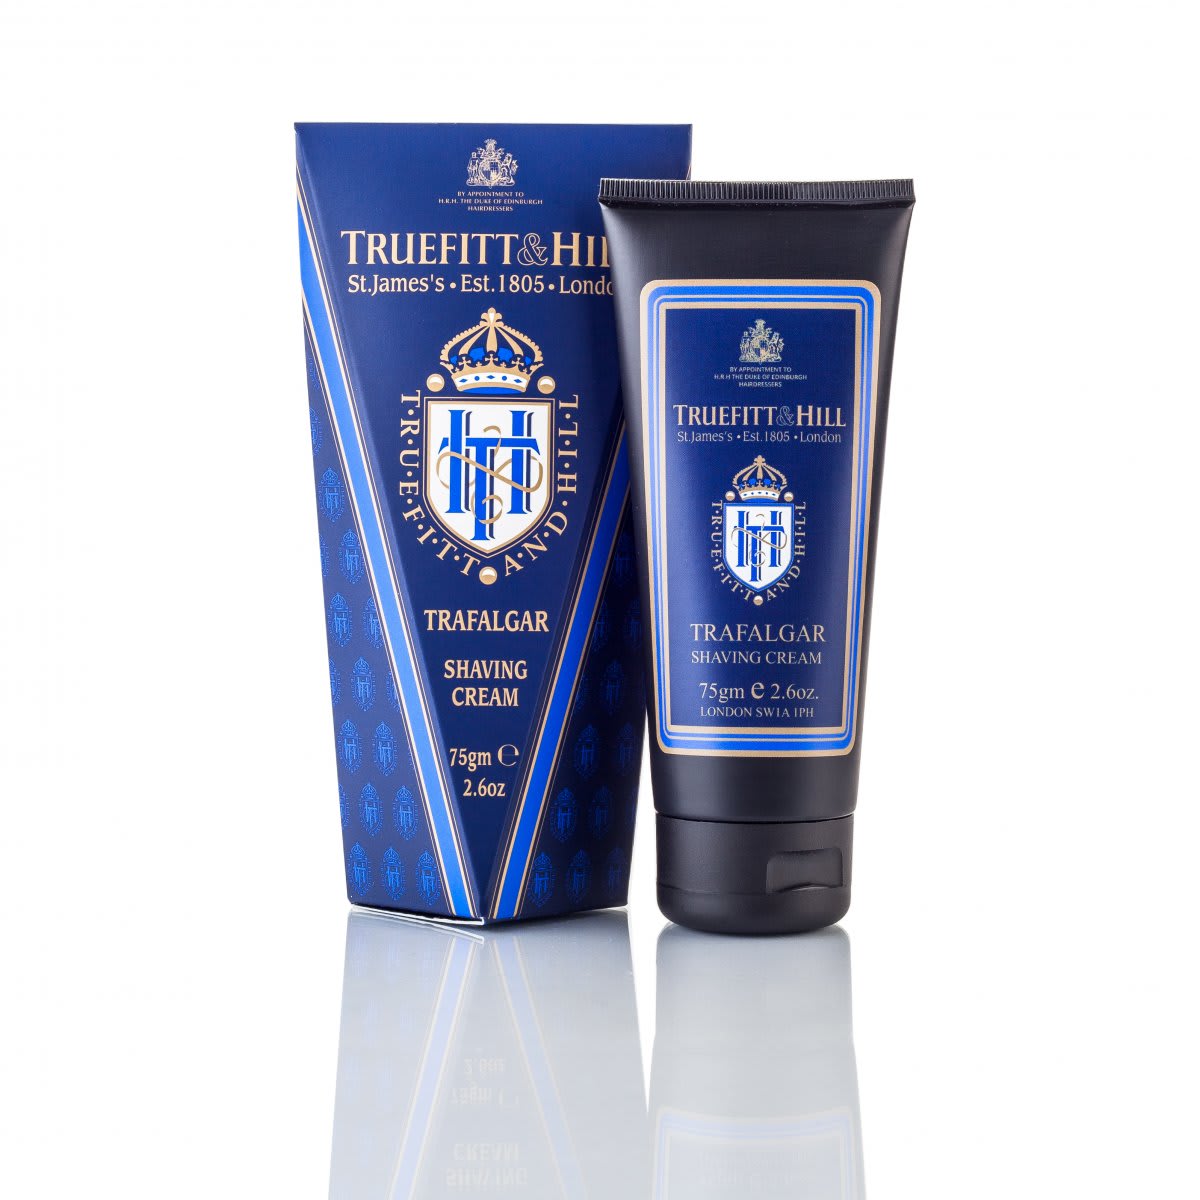 Truefitt & Hill Trafalgar Shaving Cream Tube